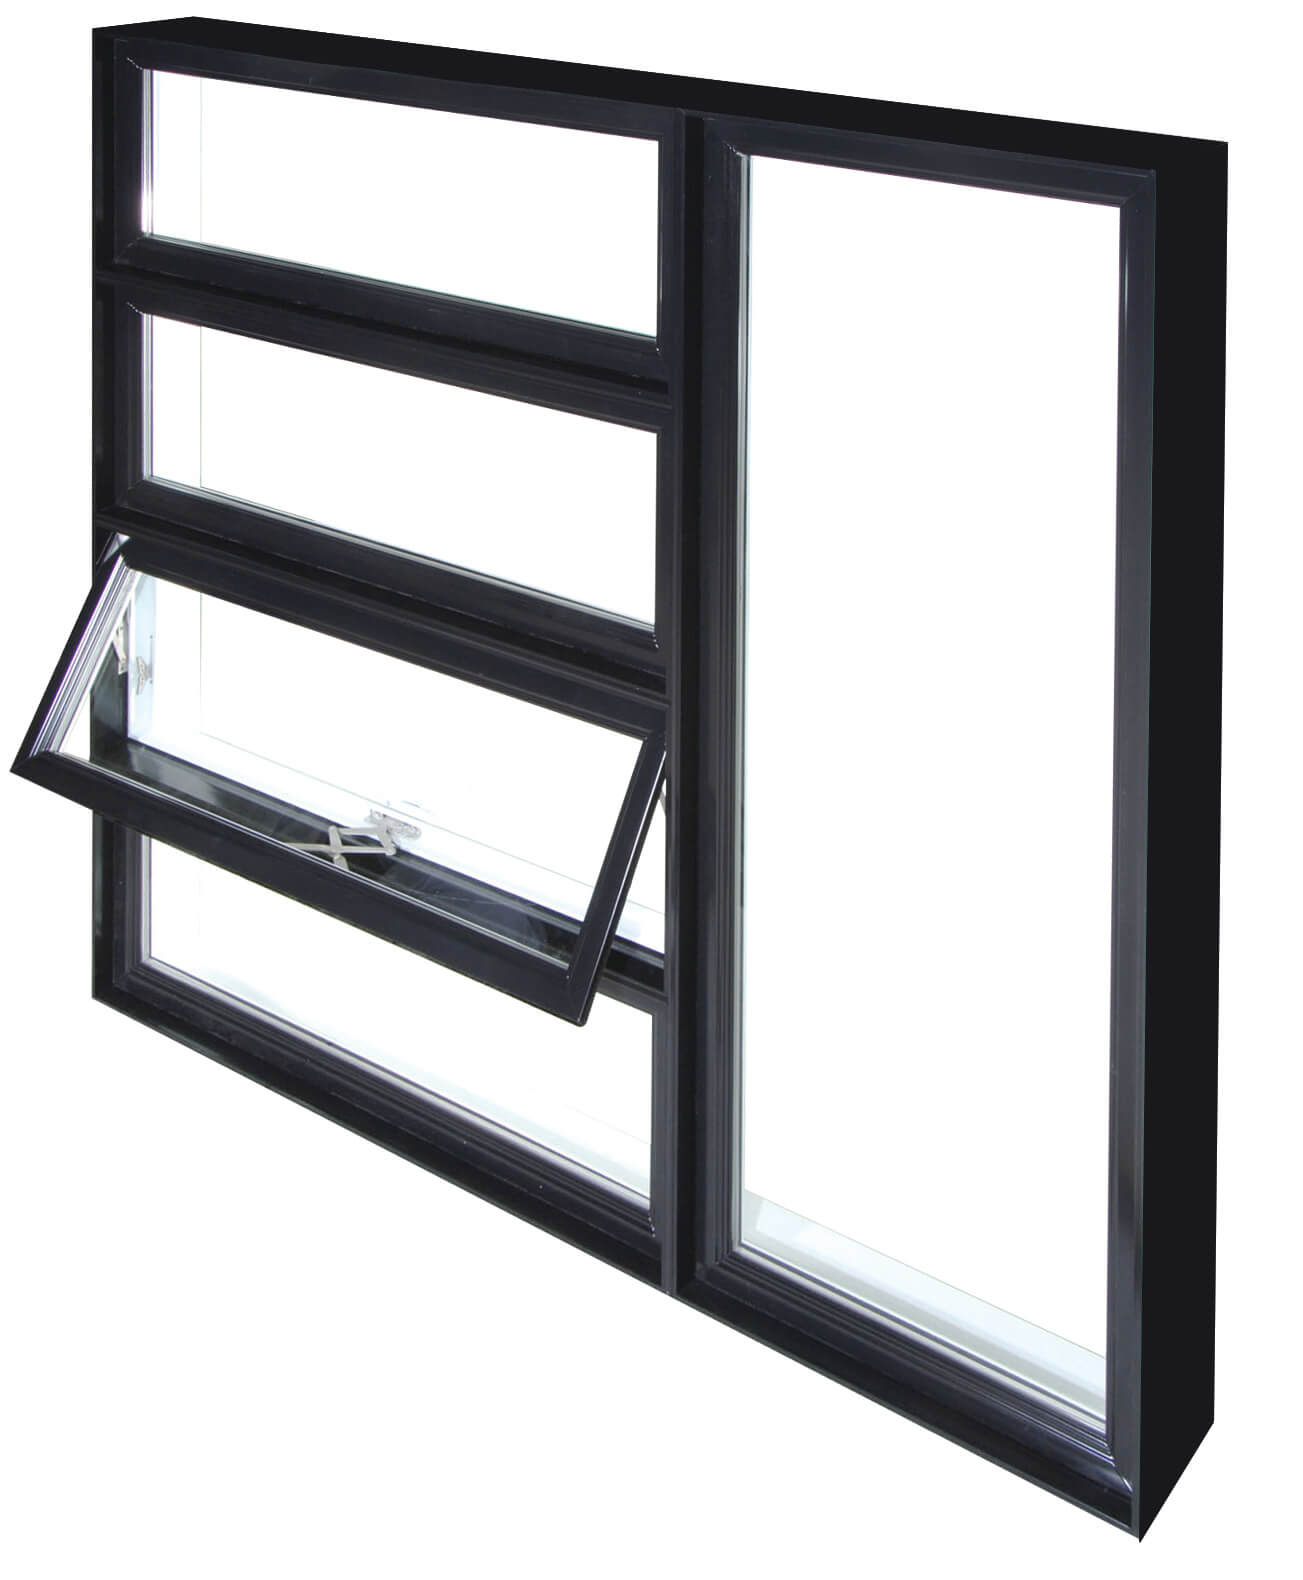 Fenêtre à auvent modèle duo auvent-battant cadre noir : 4 vitres rectangulaires horizontales à gauche et 1 verticale à droite